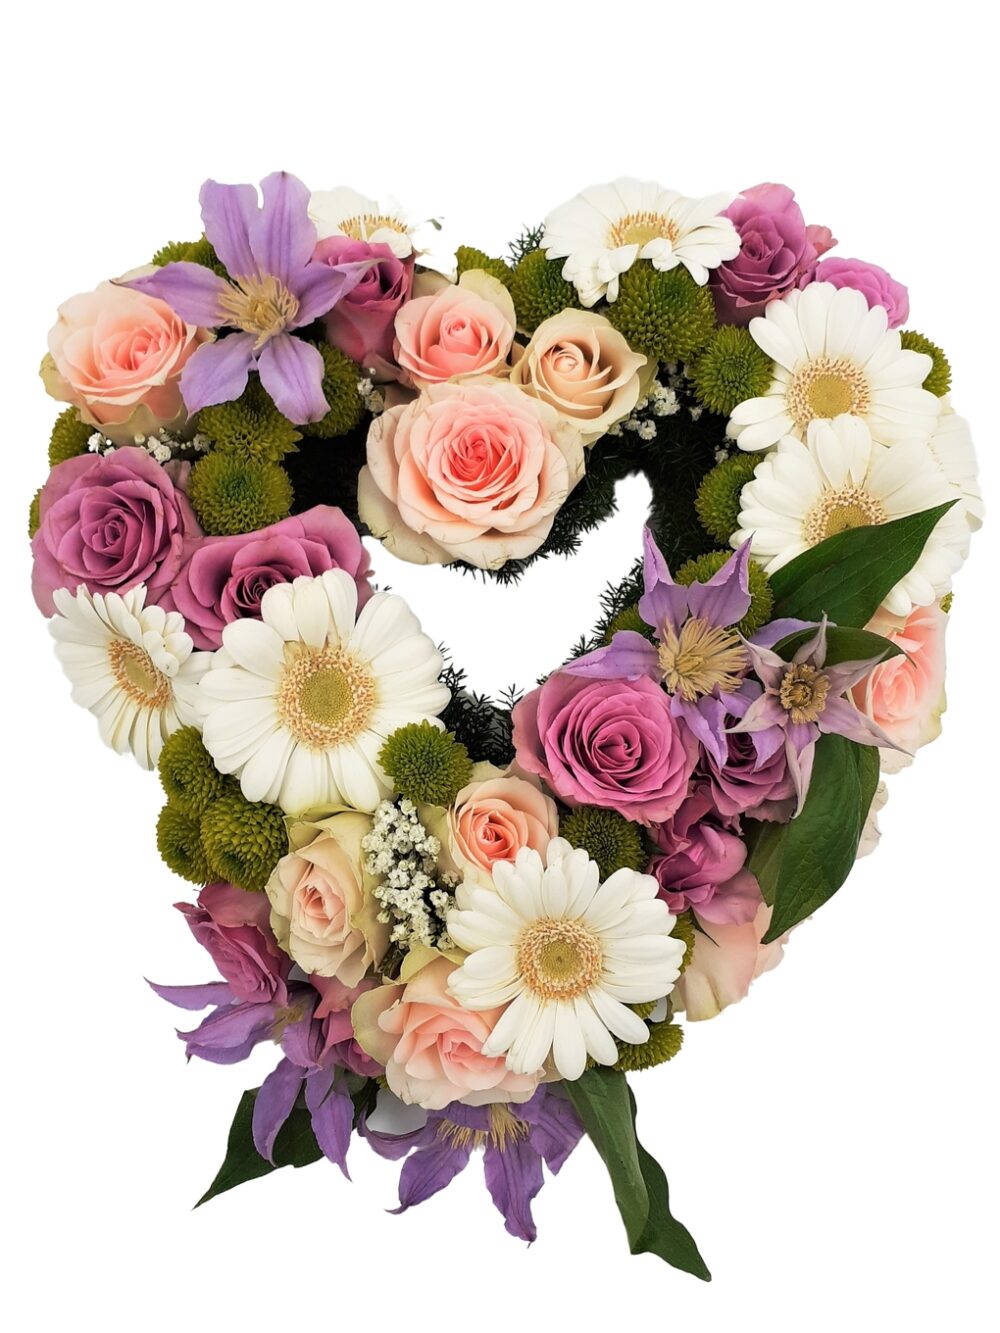 Blomsterhjärta av rosor, gerbera och krysantemum i pastellfärger hos Bellis blomsterhandel.